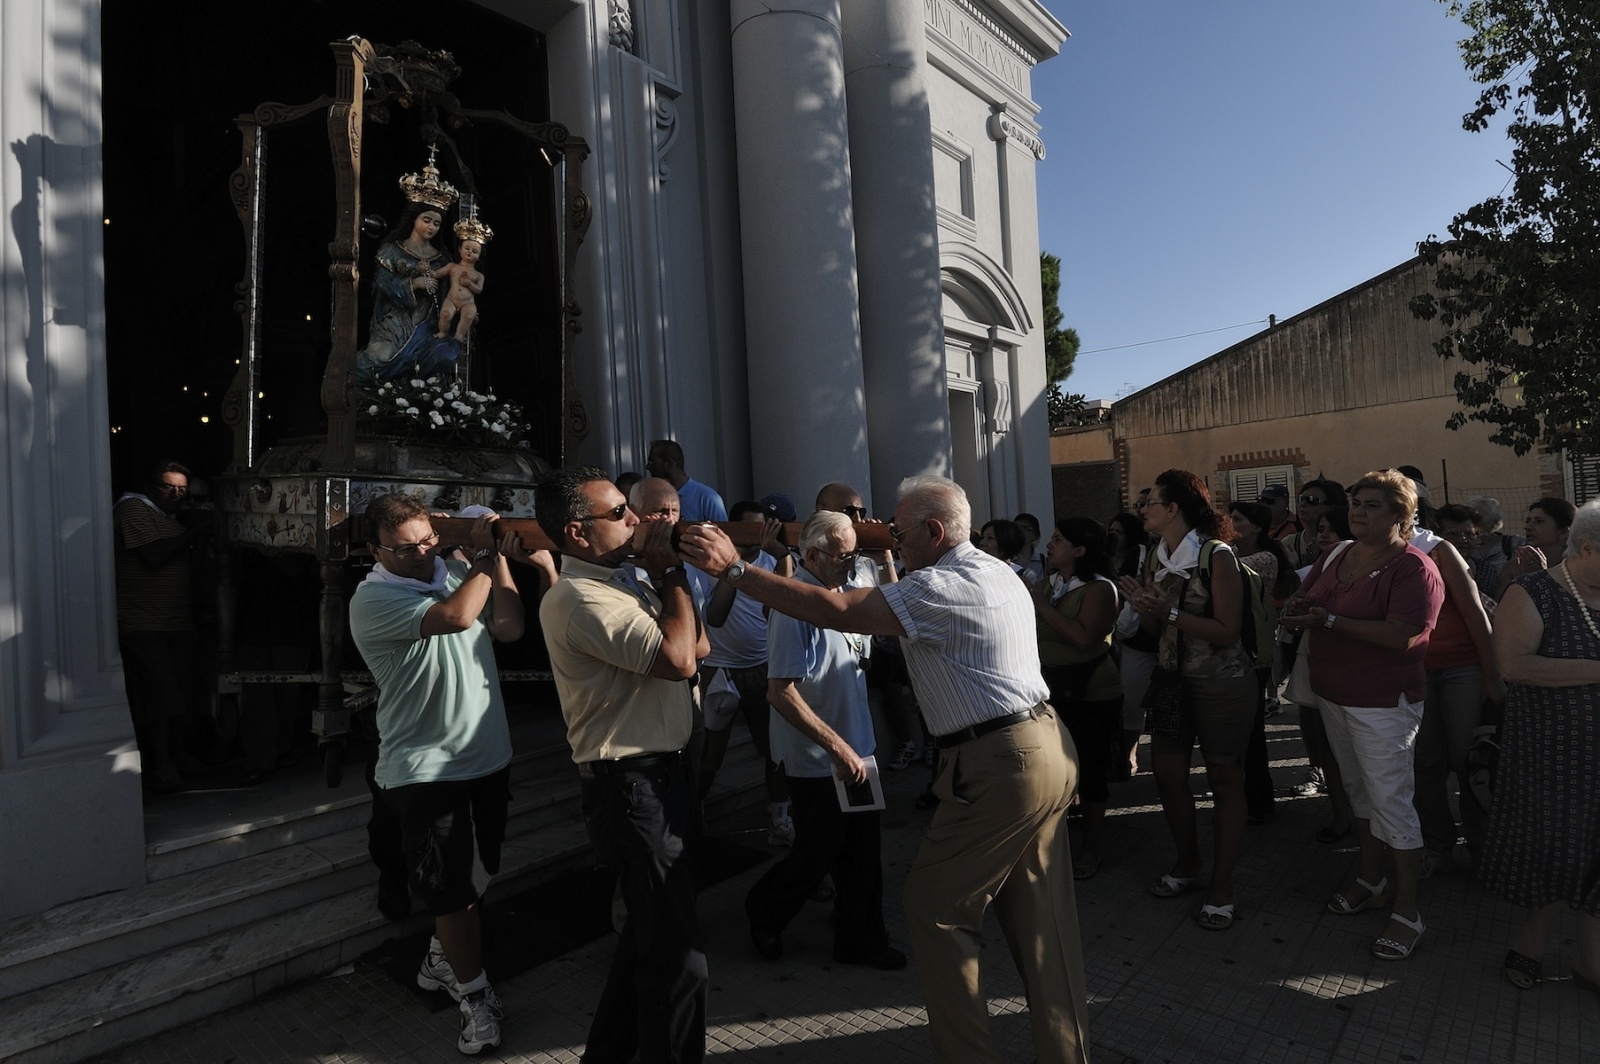 Festa della Madonna della Montagna - Frazione Polsi di San Luca